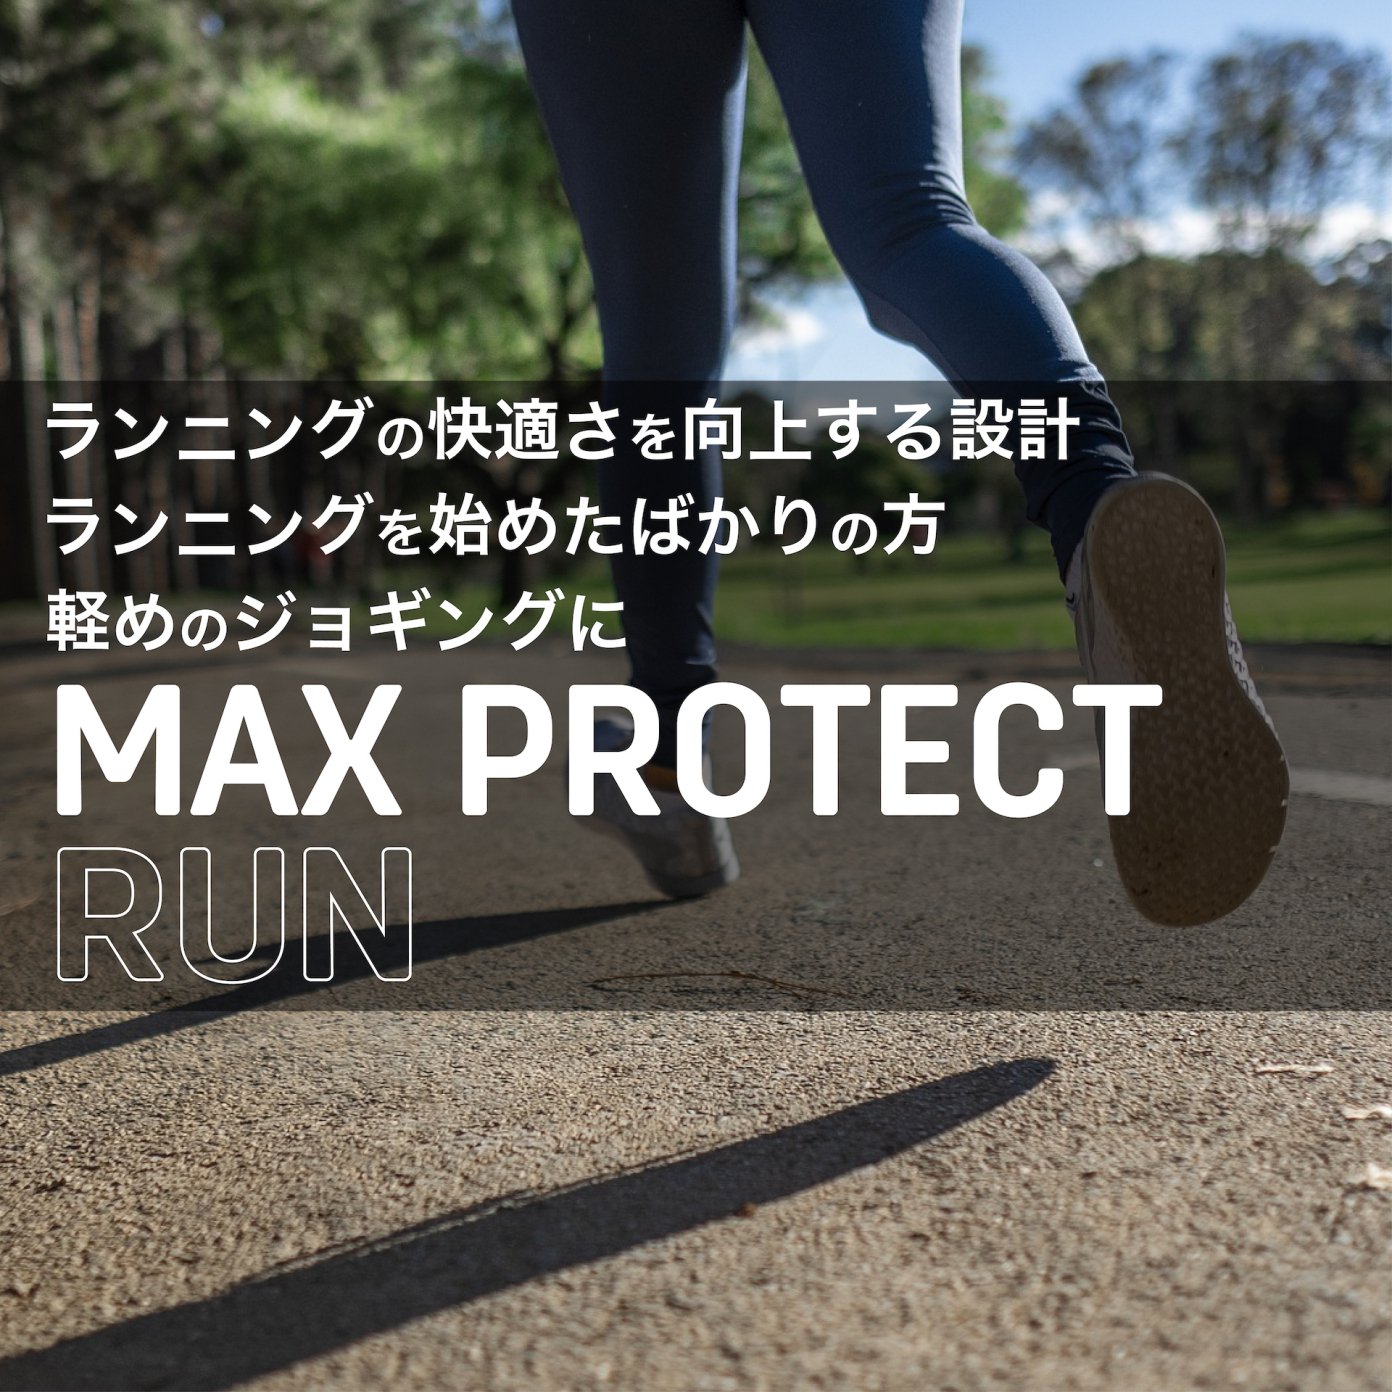 マックスプロテクト・ラン - SIDAS JAPAN ONLINE SHOP